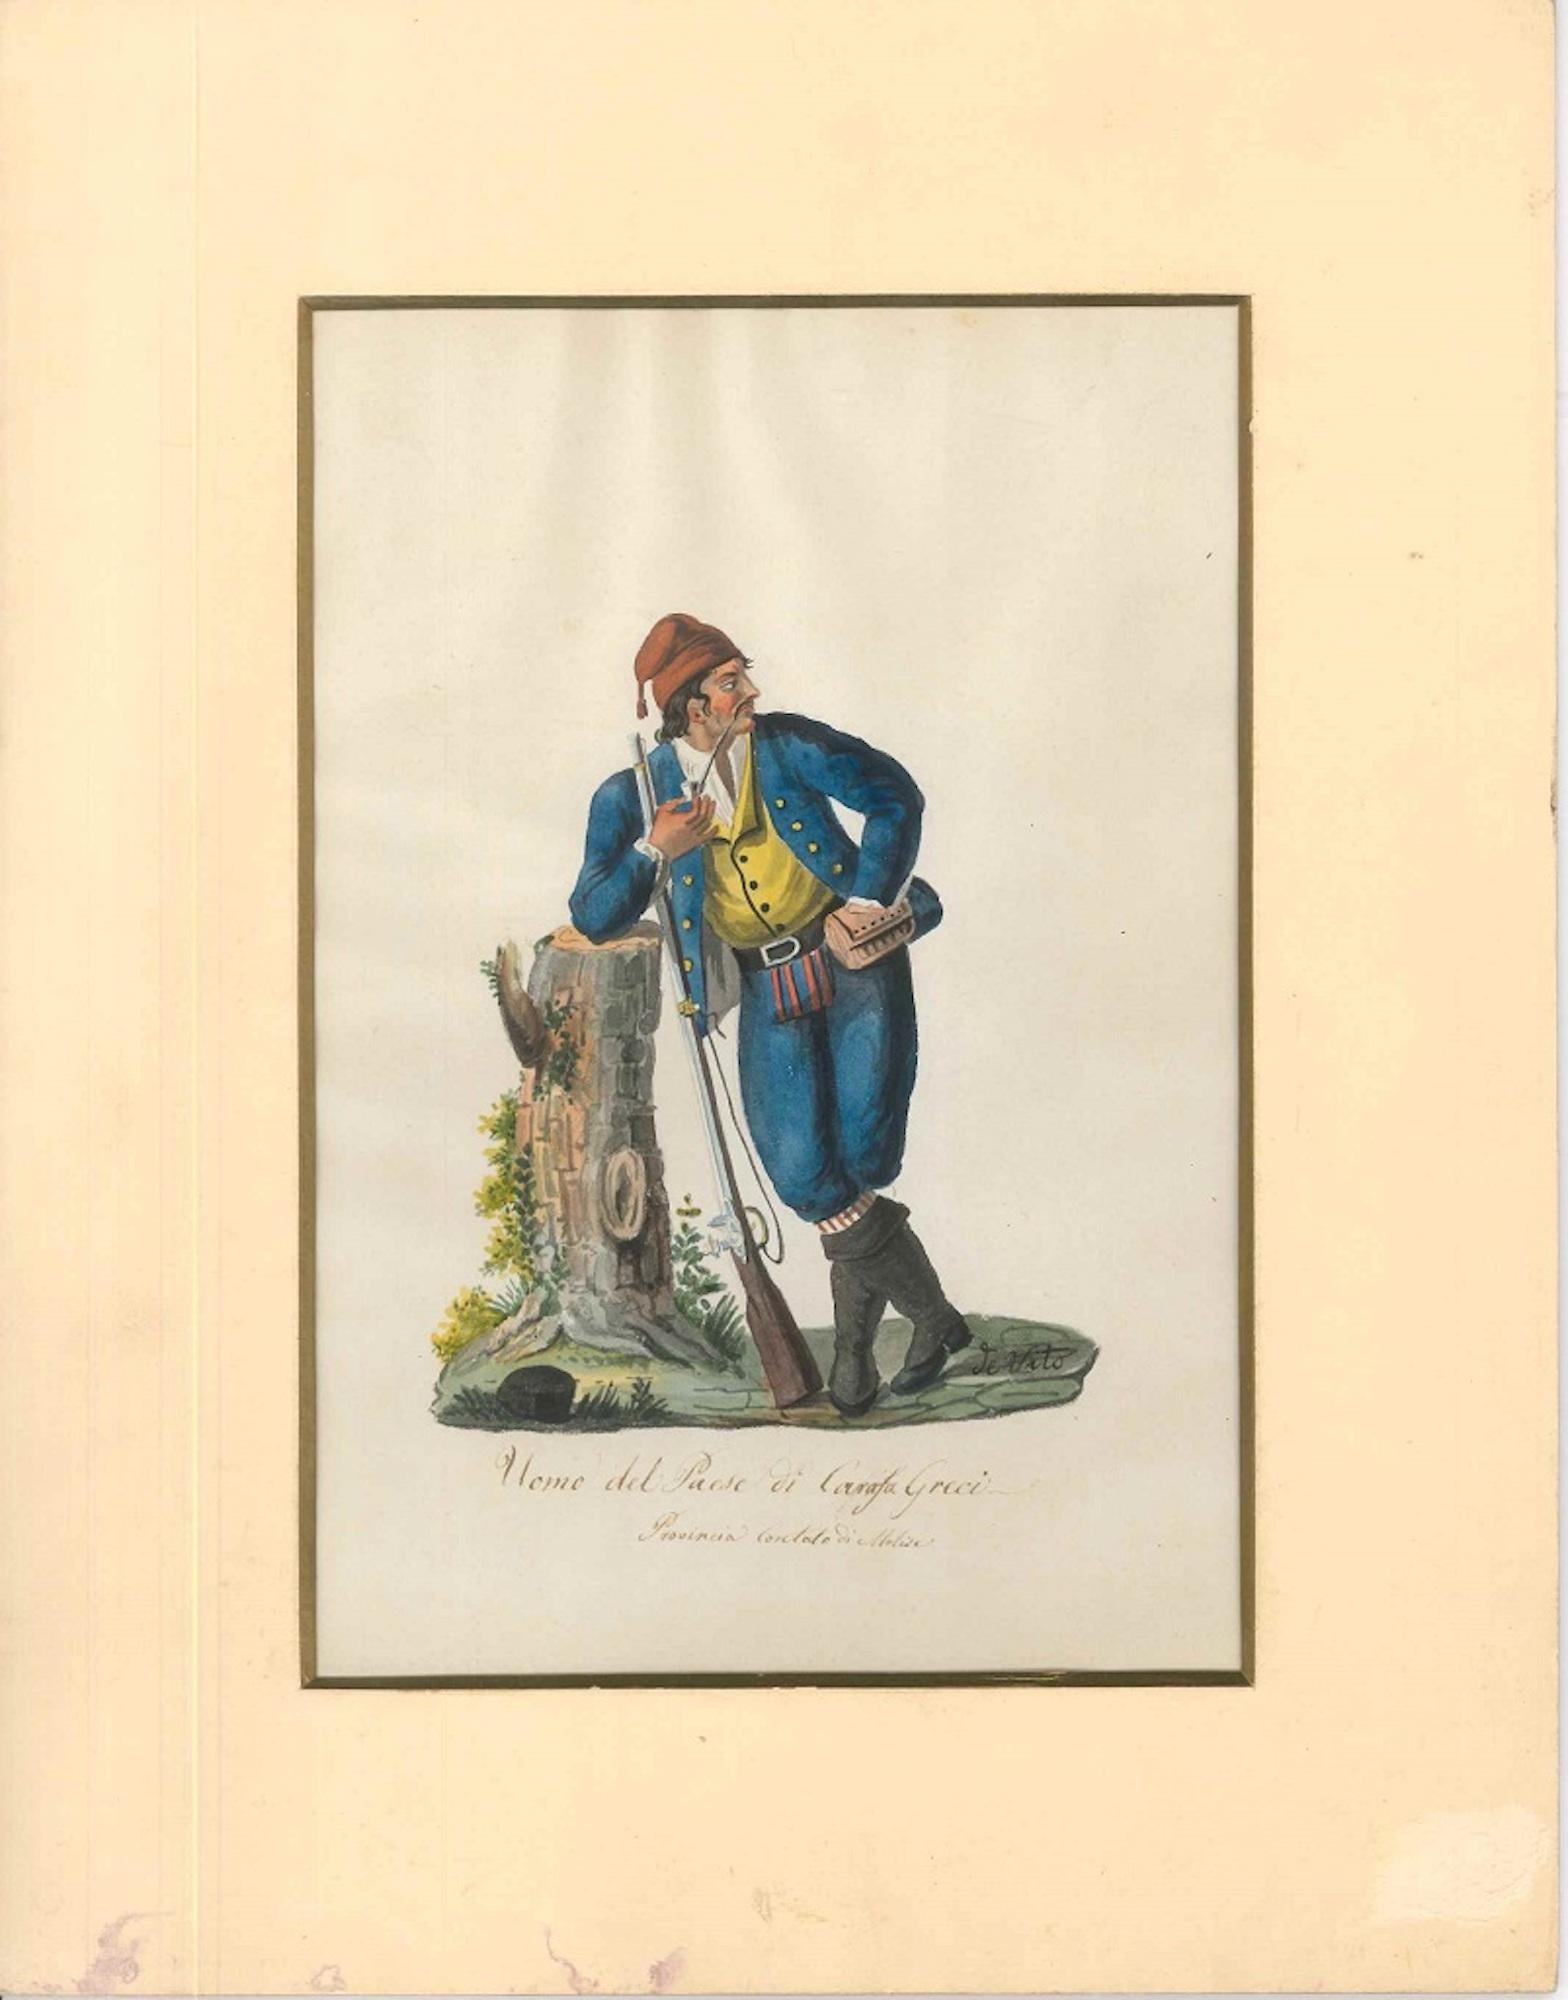 Uomo del Paese di Carafa Greci – Aquarell von M. De Vito – 1820, ca. – Art von Michela De Vito